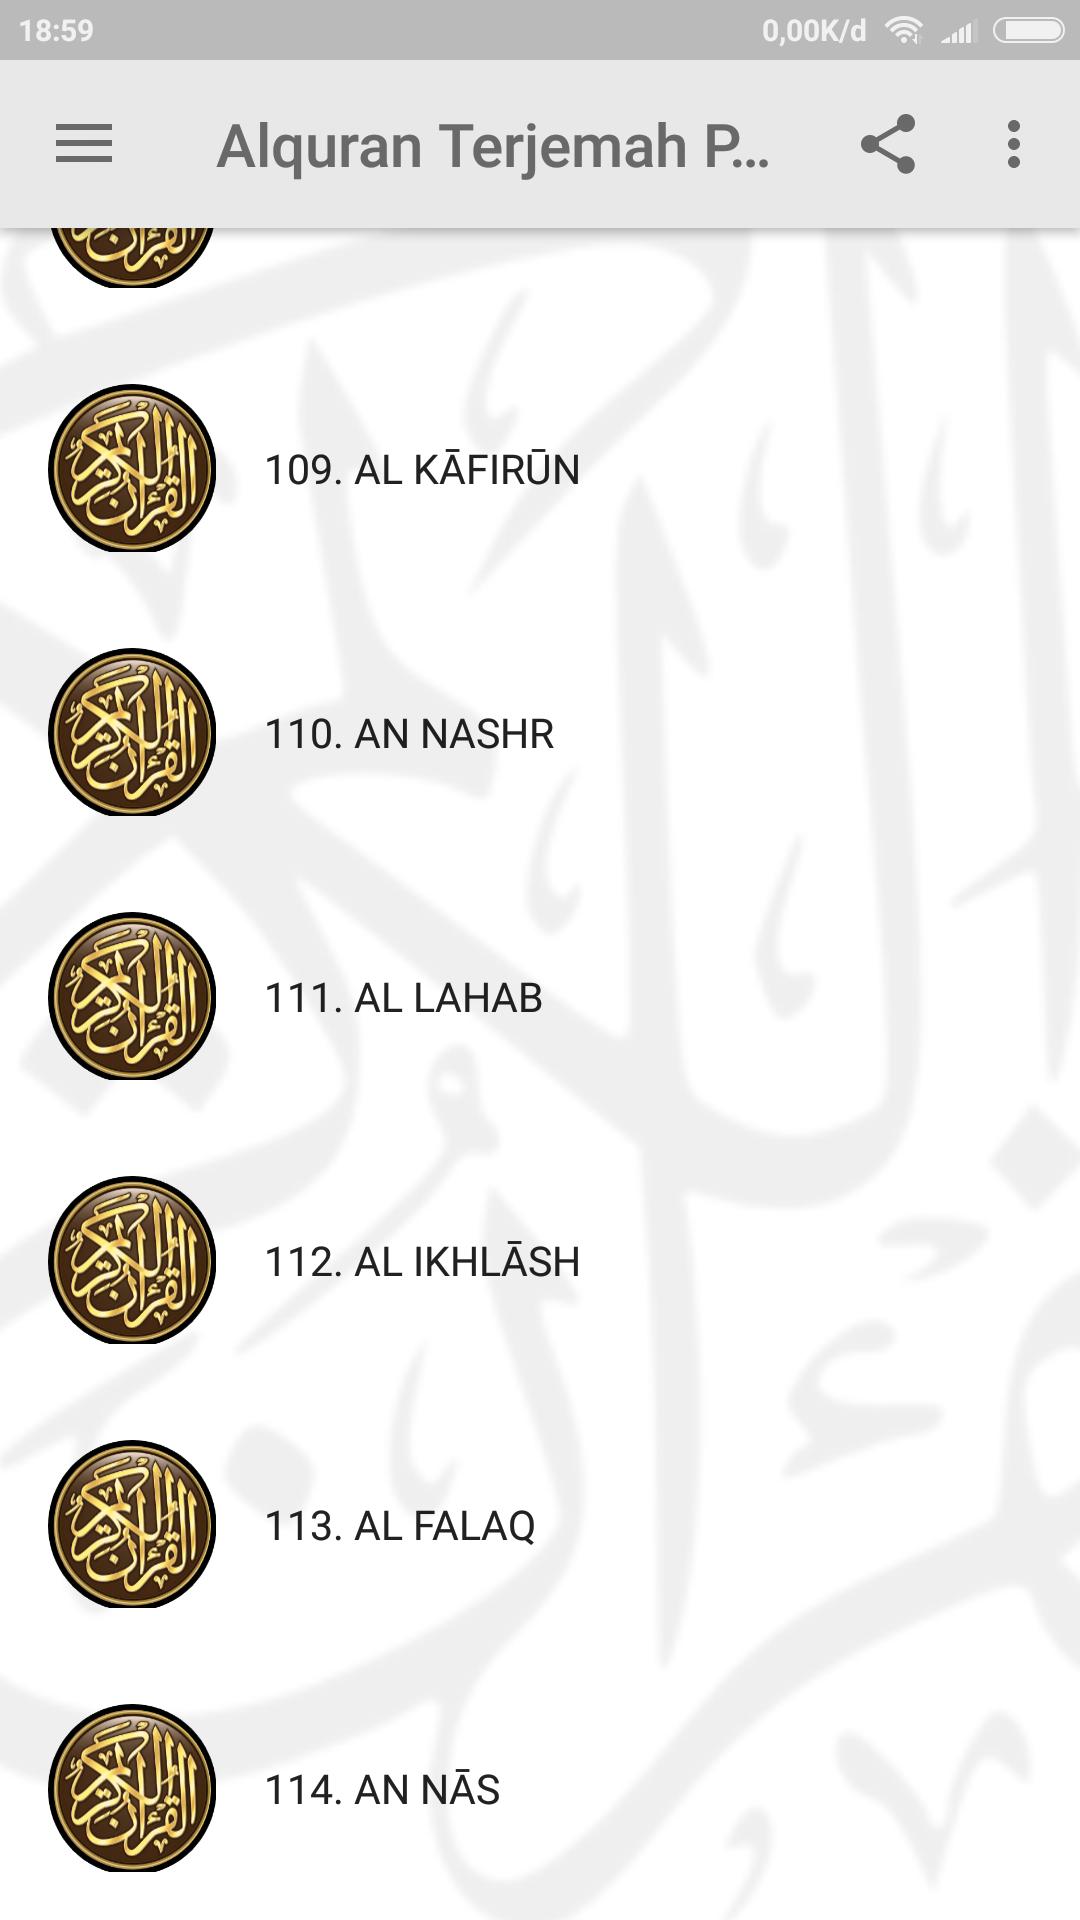 Al Quran Terjemah Perkata For Android Apk Download